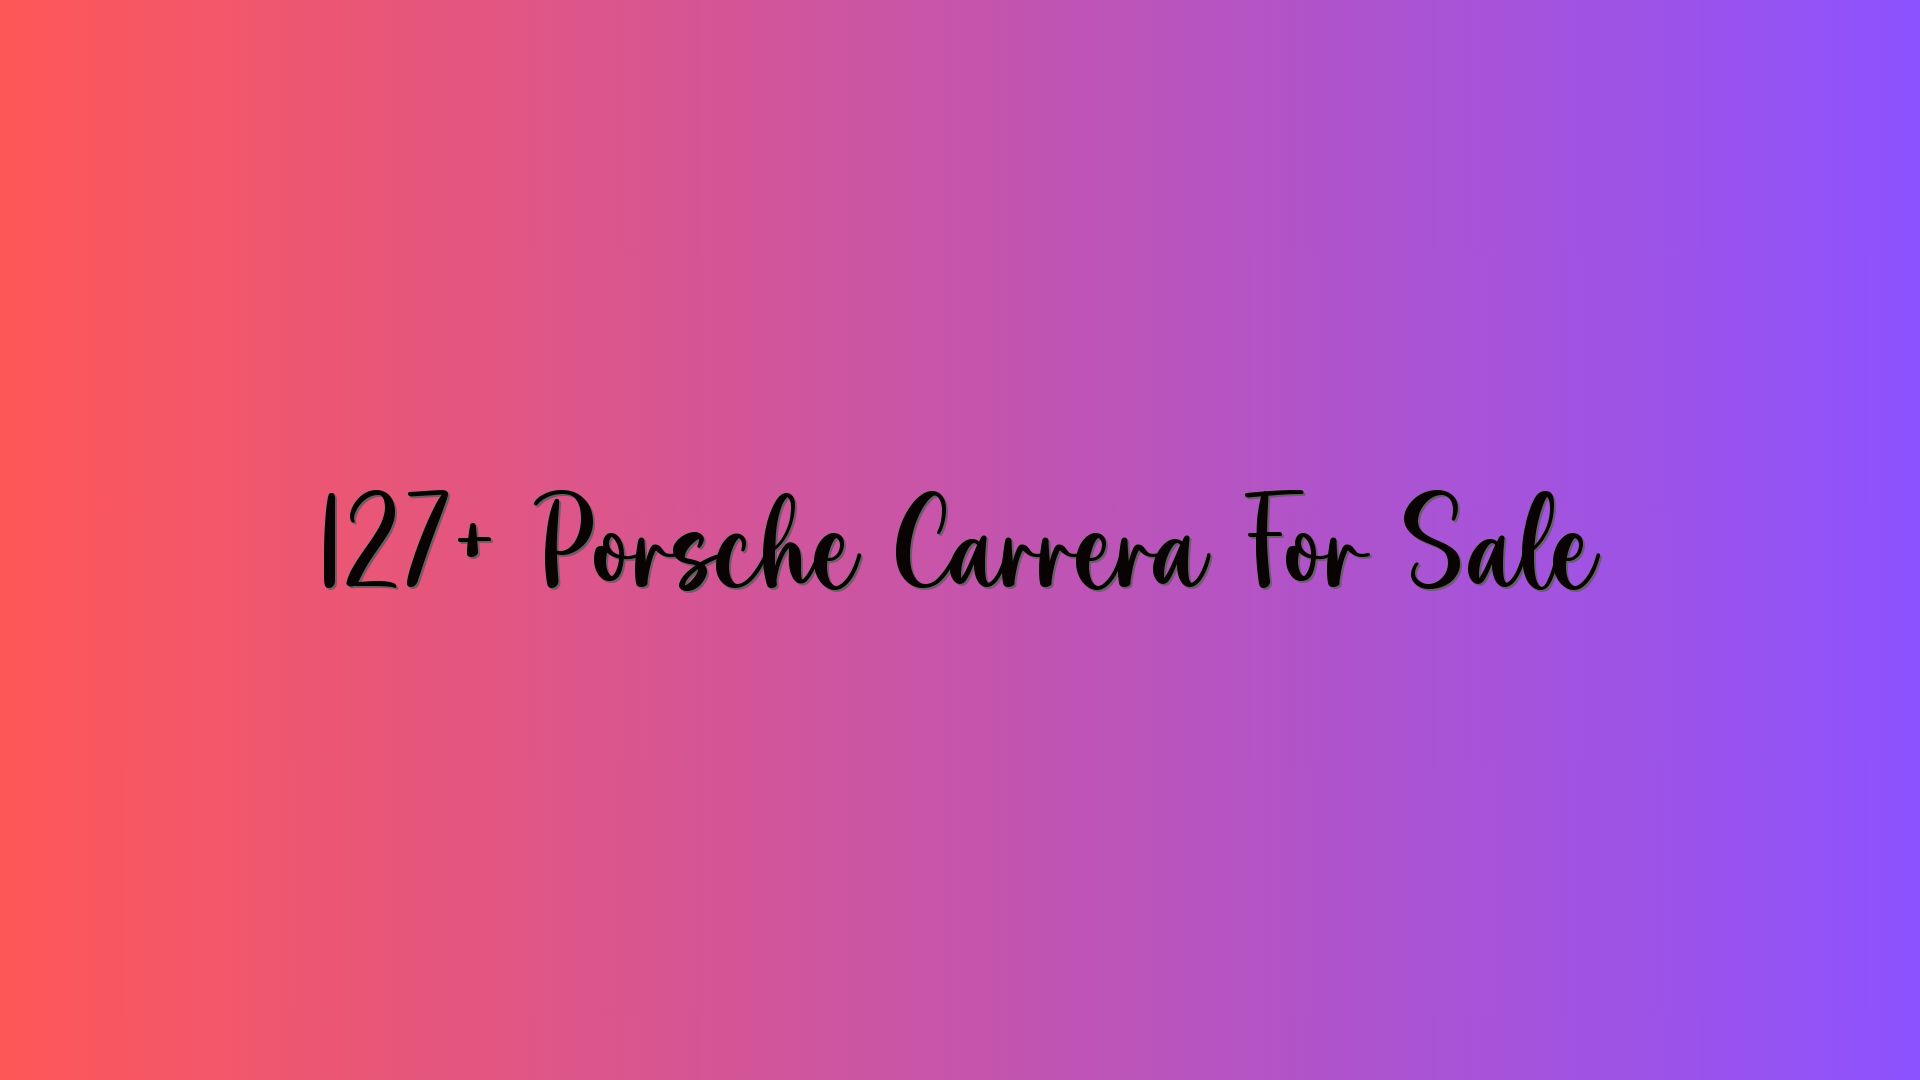 127+ Porsche Carrera For Sale